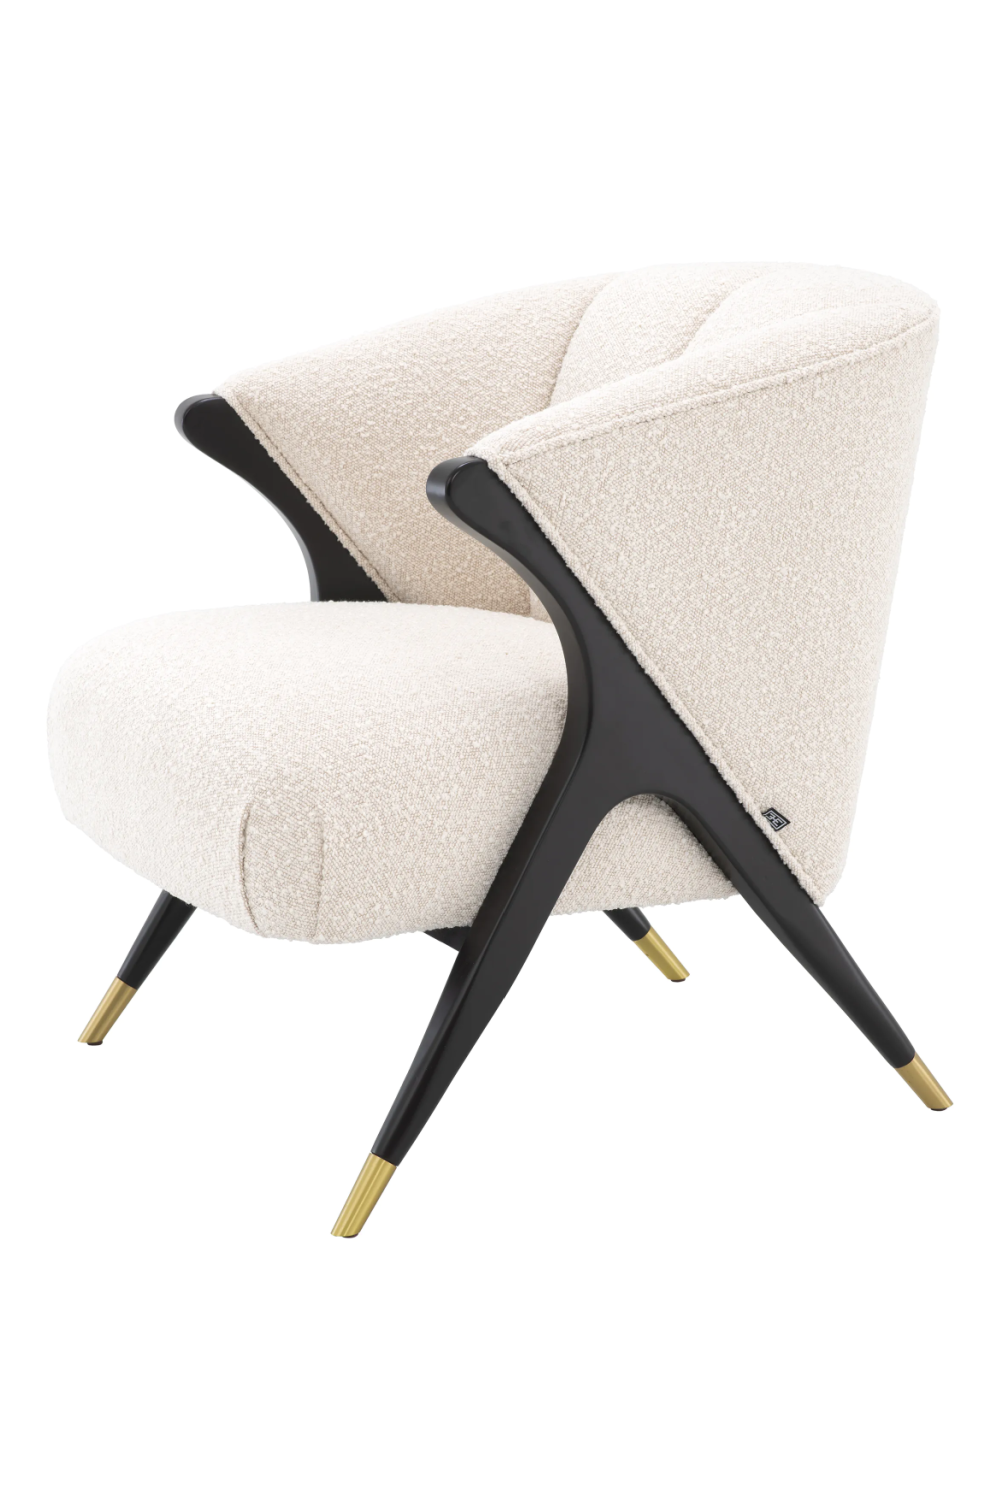 Cream Bouclé Accent Chair | Eichholtz Pavone | Oroa.com